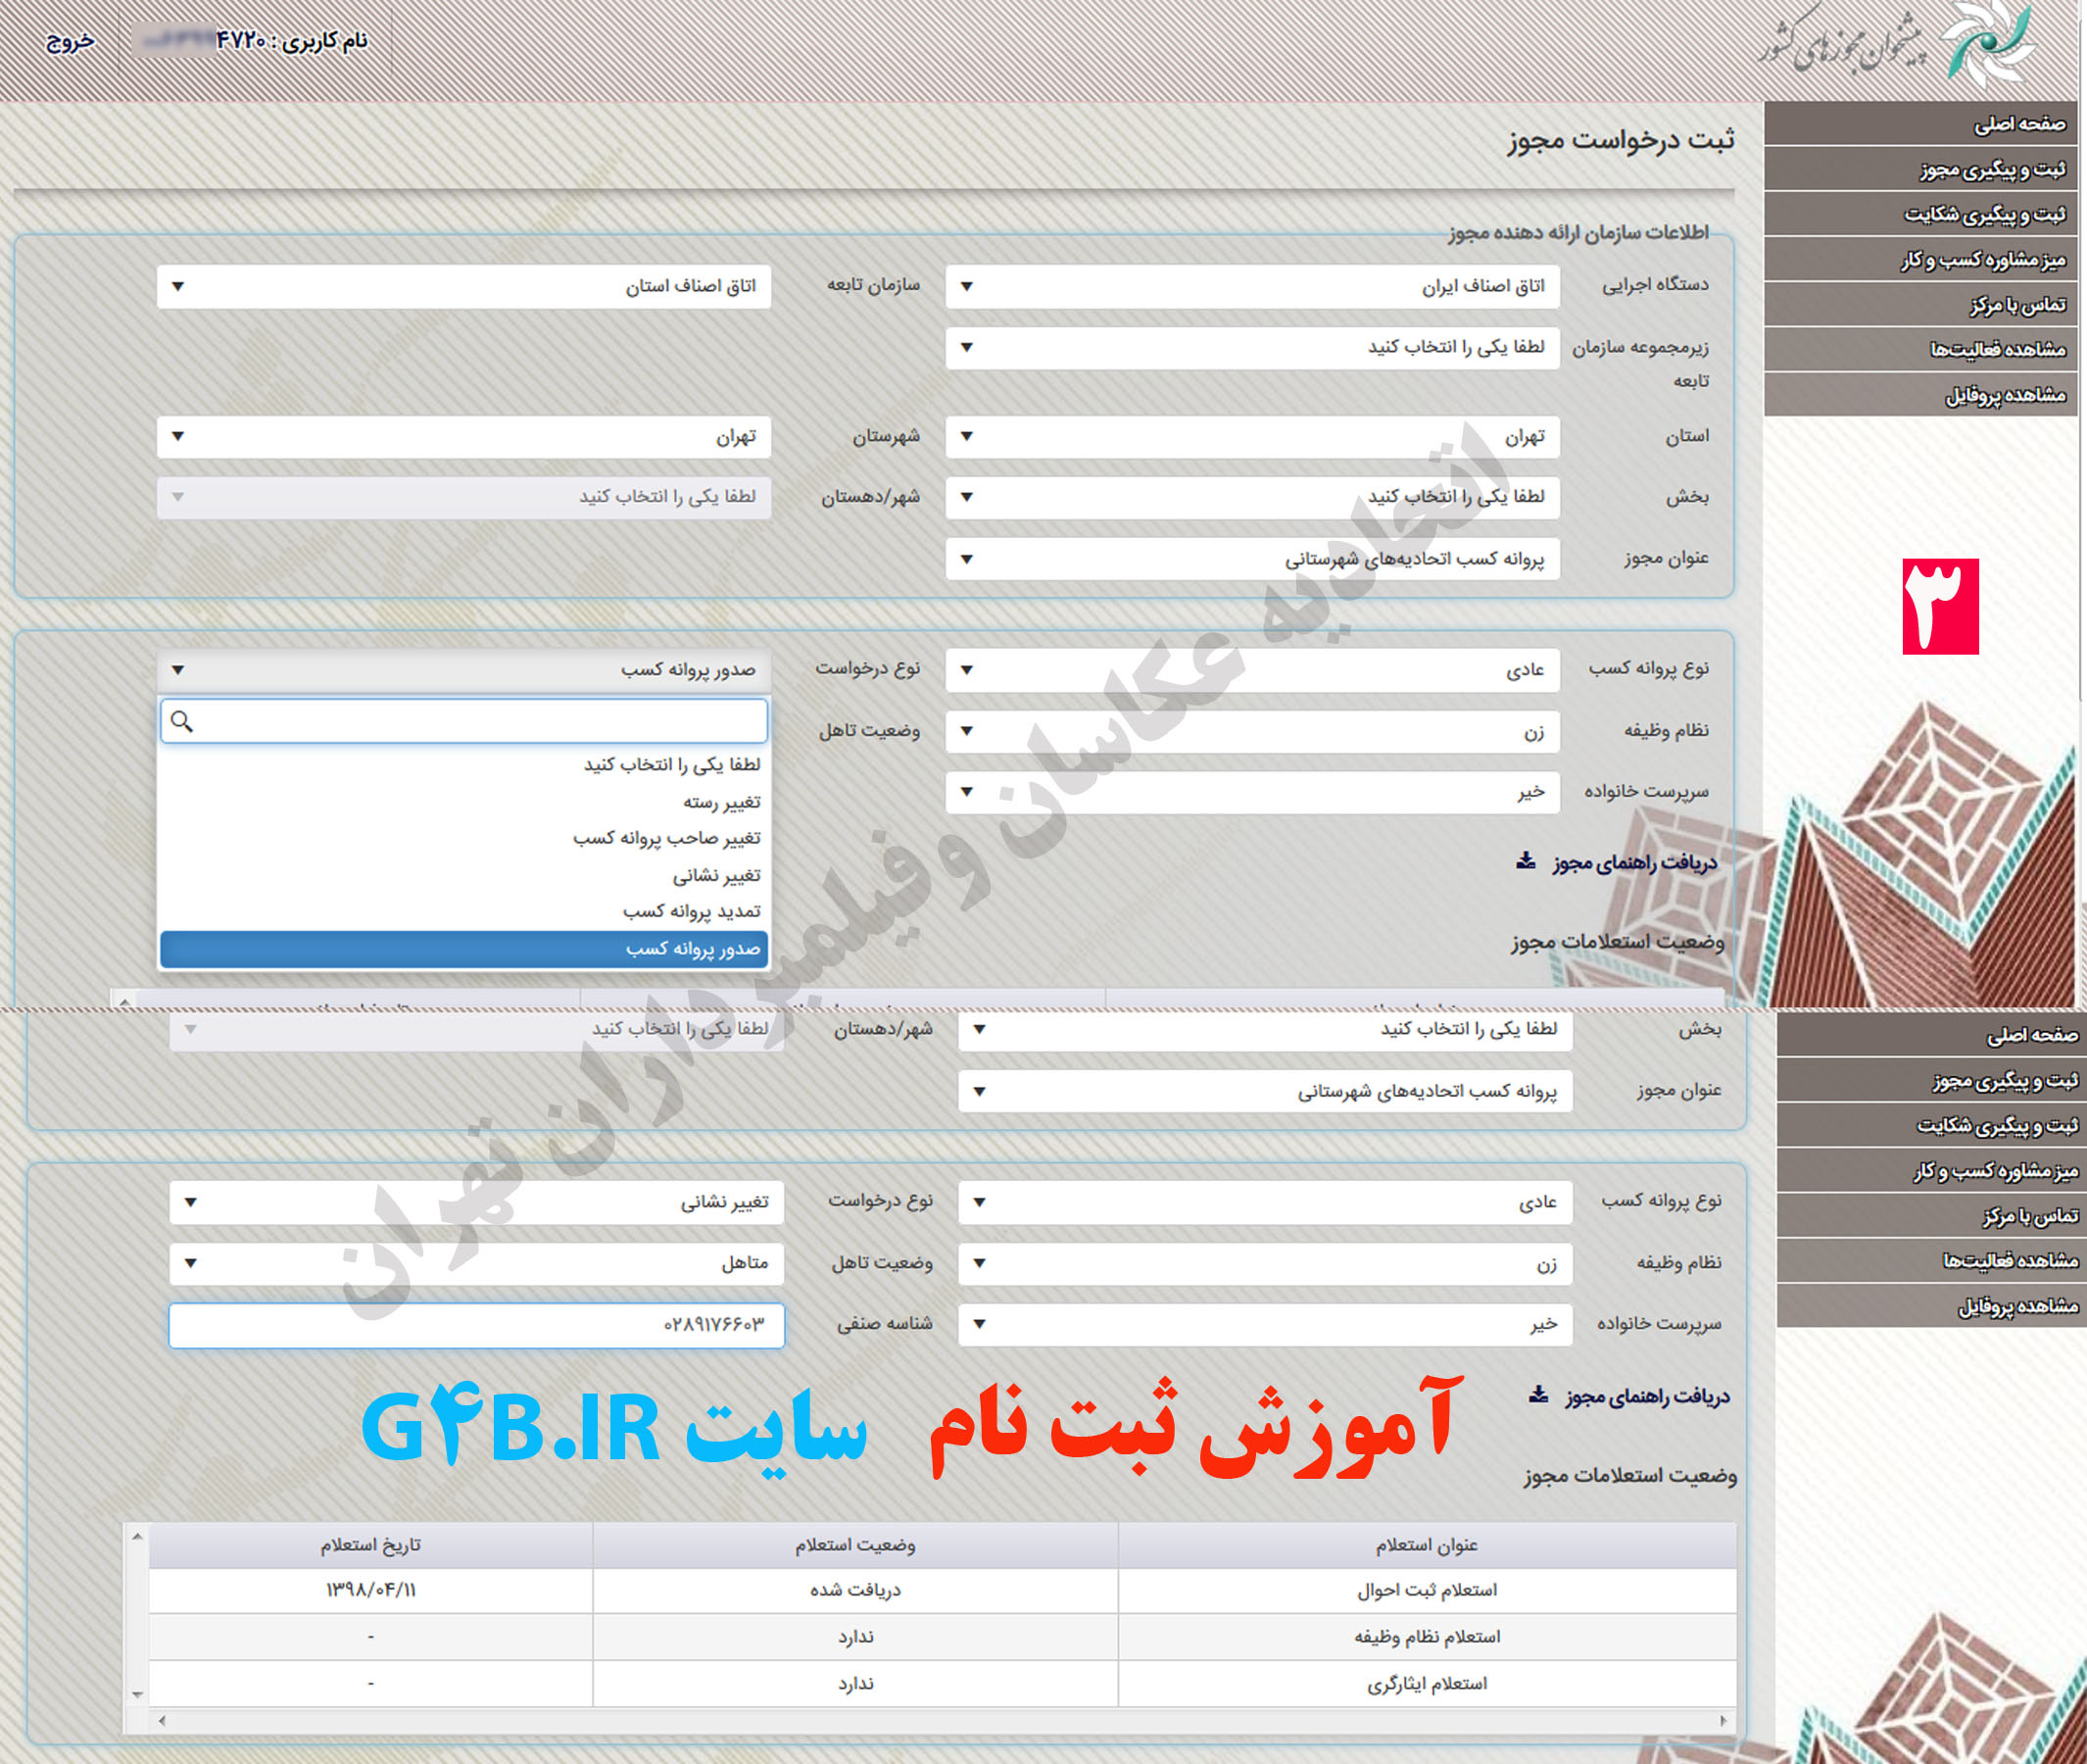 راهنمای ثبت نام در وبسایت پیشخوان مجوز های کشور G4B.ir اتحادیه عکاسان تهران